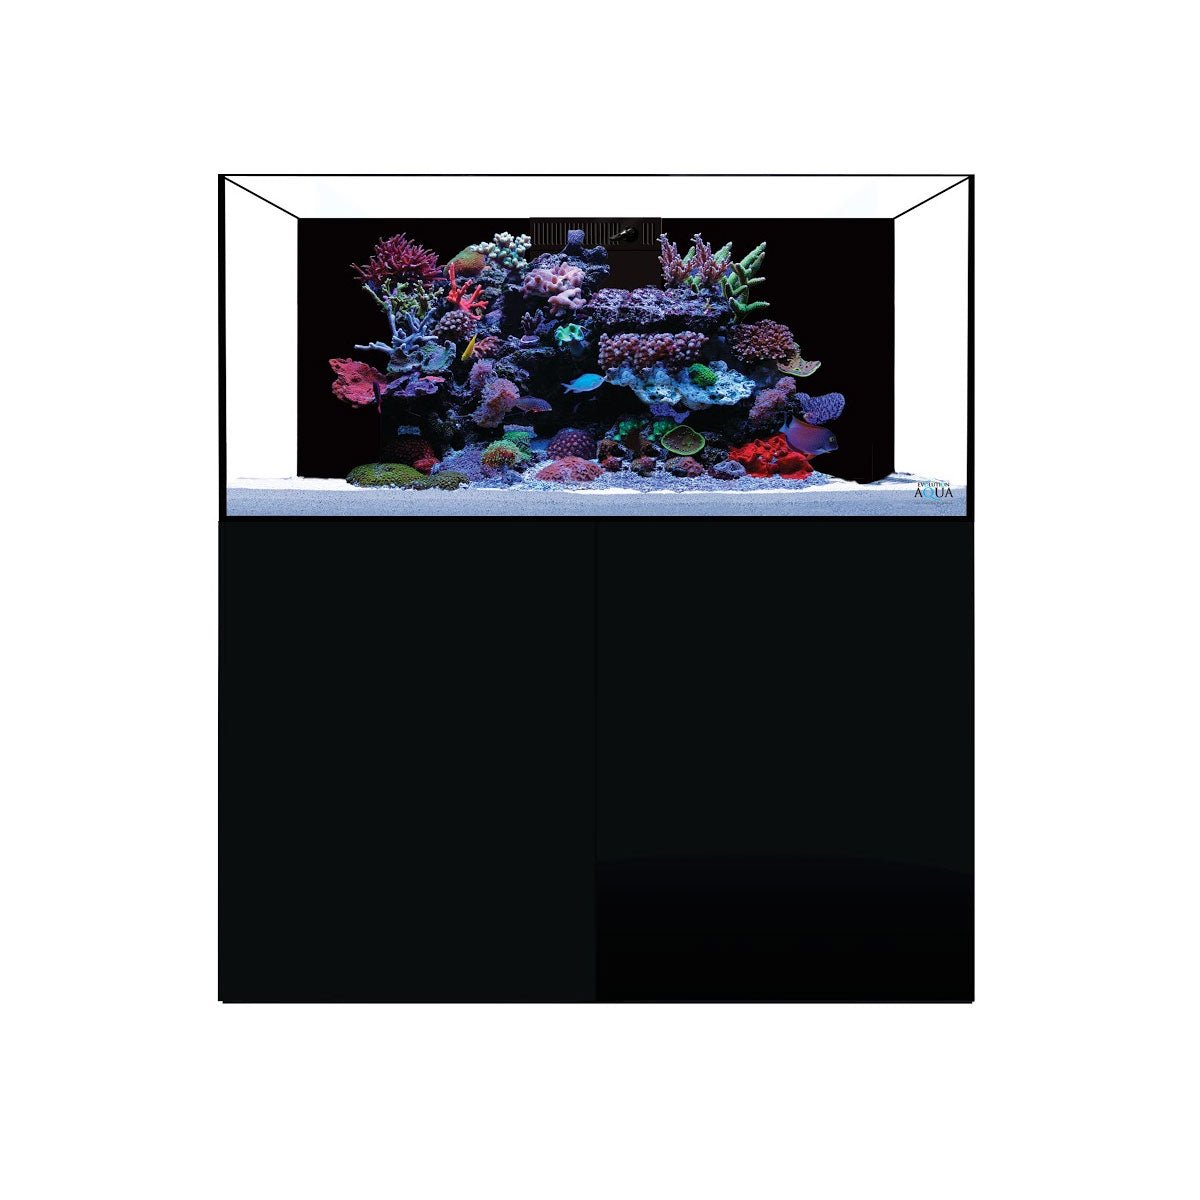 D-D Aqua-Pro Reef 1200 - Gloss Black - AquaFrame Cabinet - Charterhouse Aquatics